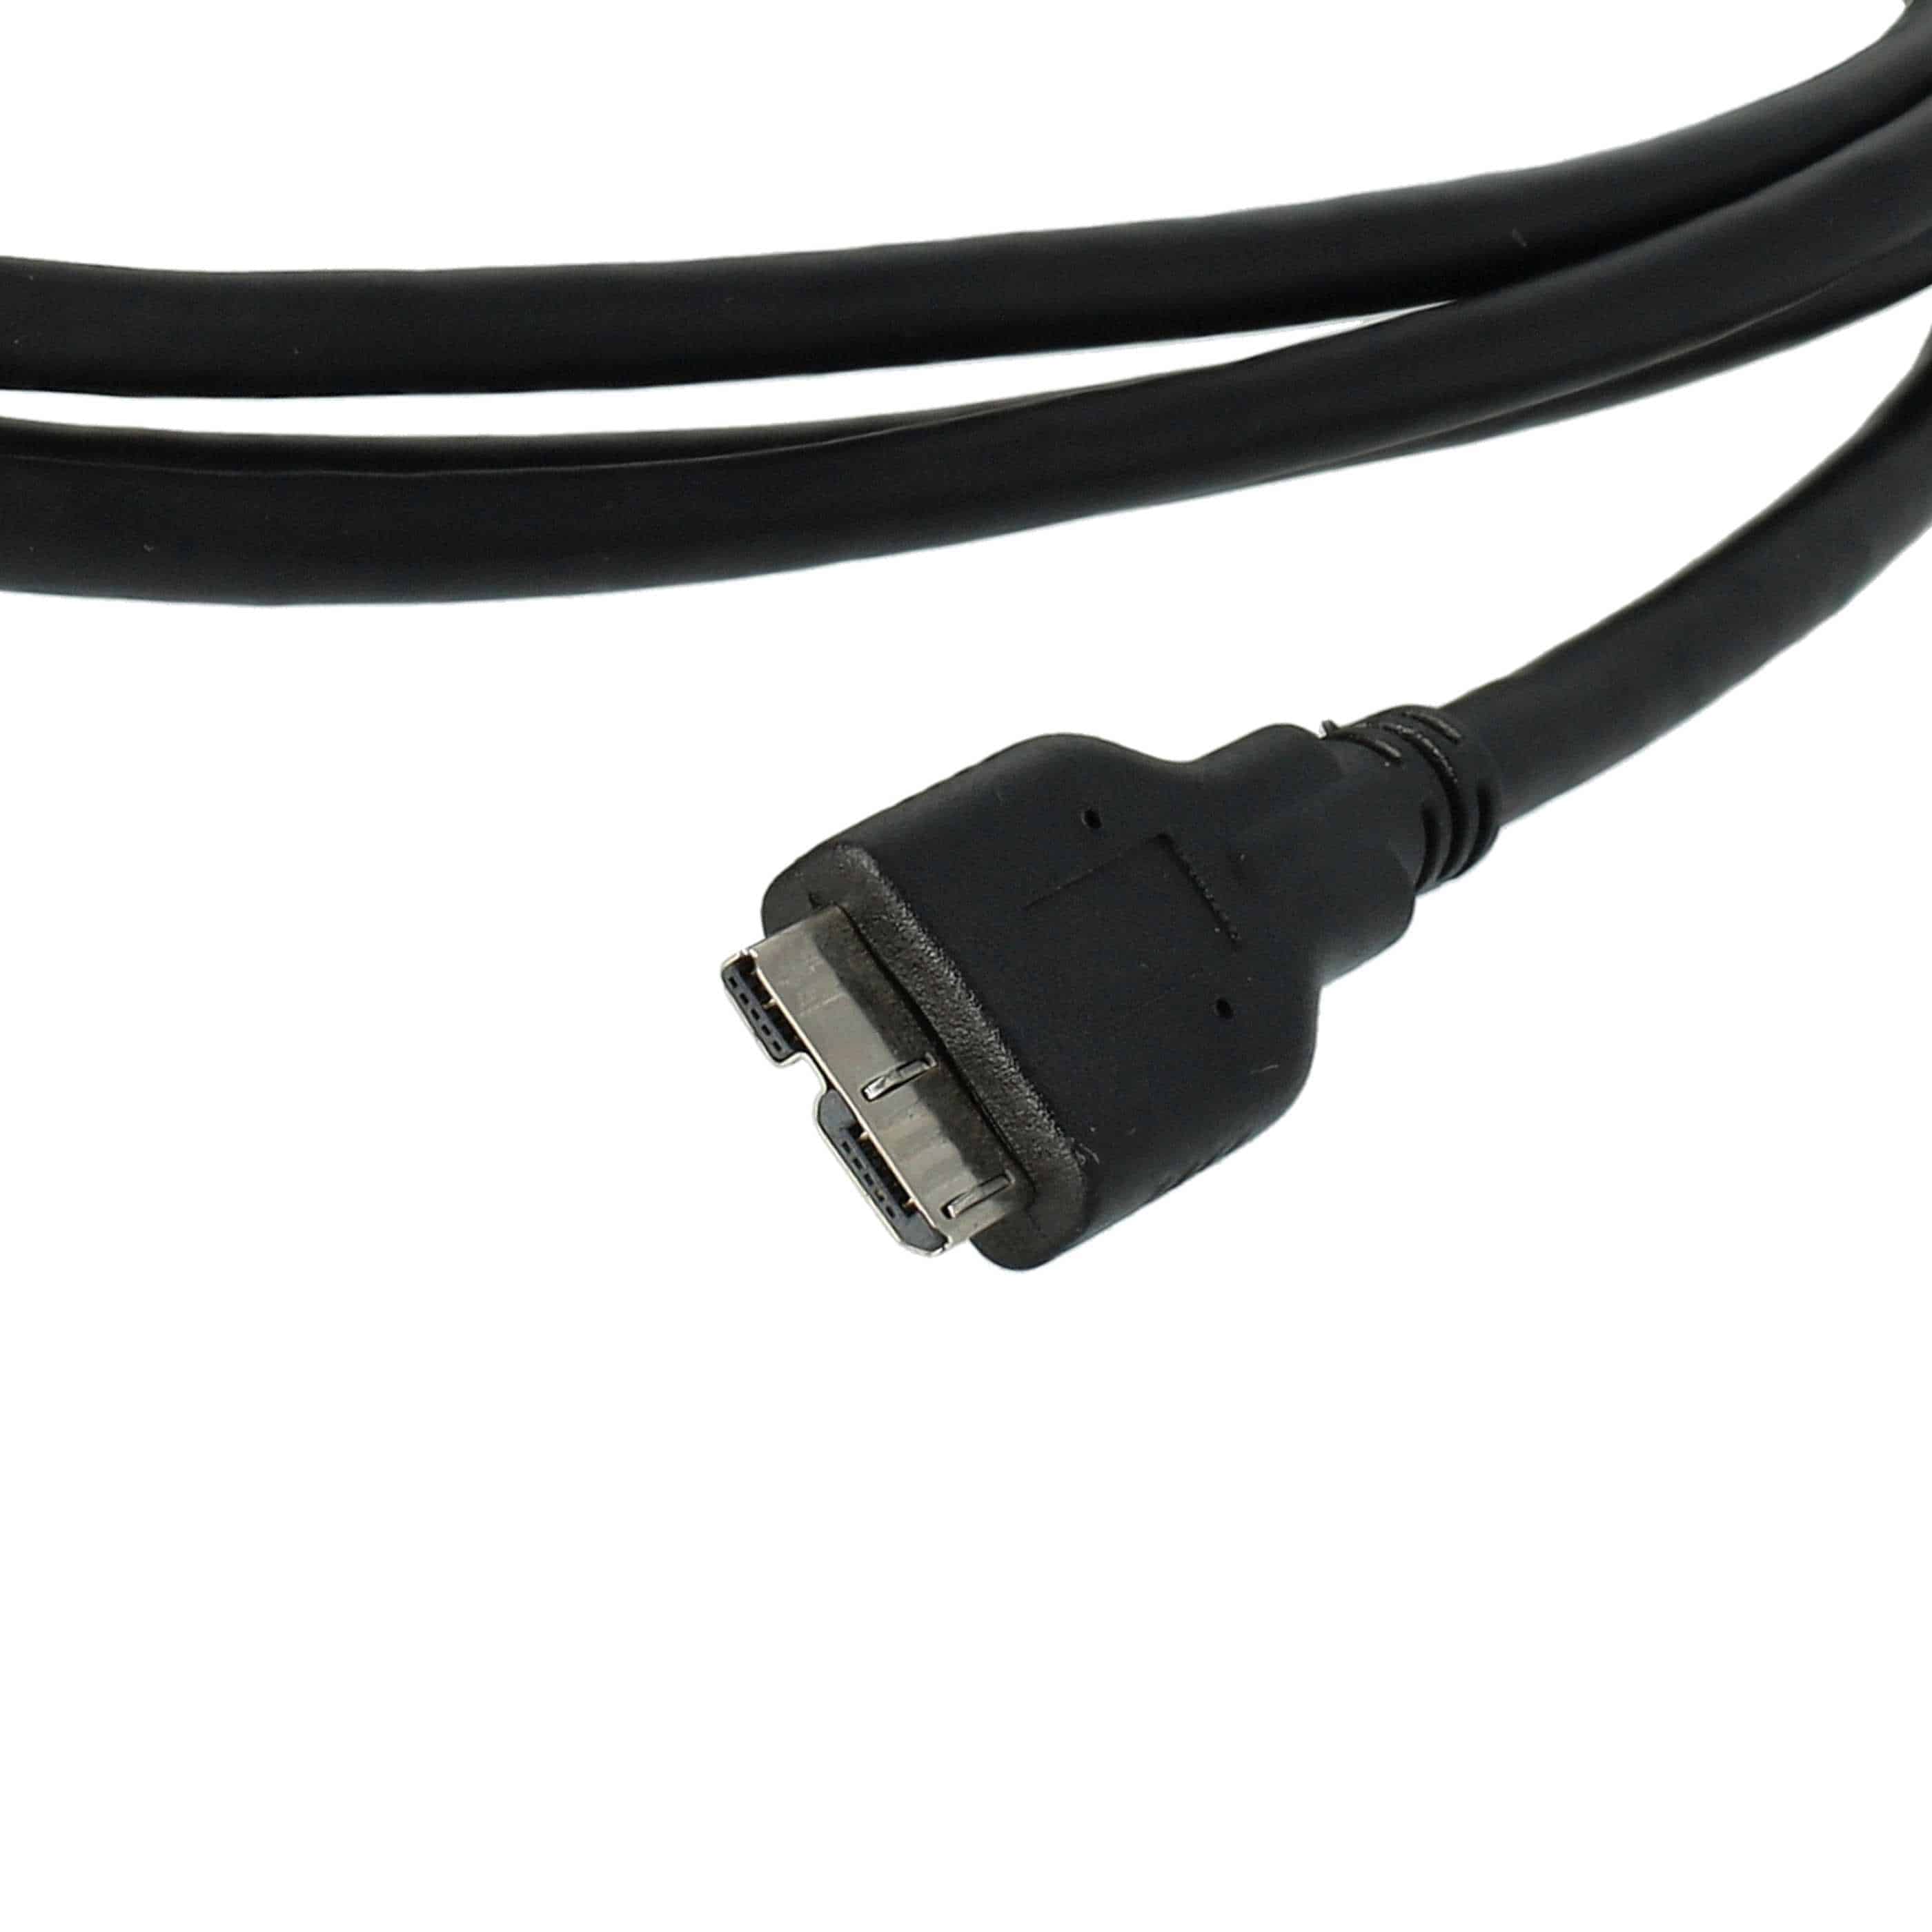 Cable de datos USB reemplaza Nikon UC-E14, UC-E22 para cámaras Nikon - 150 cm